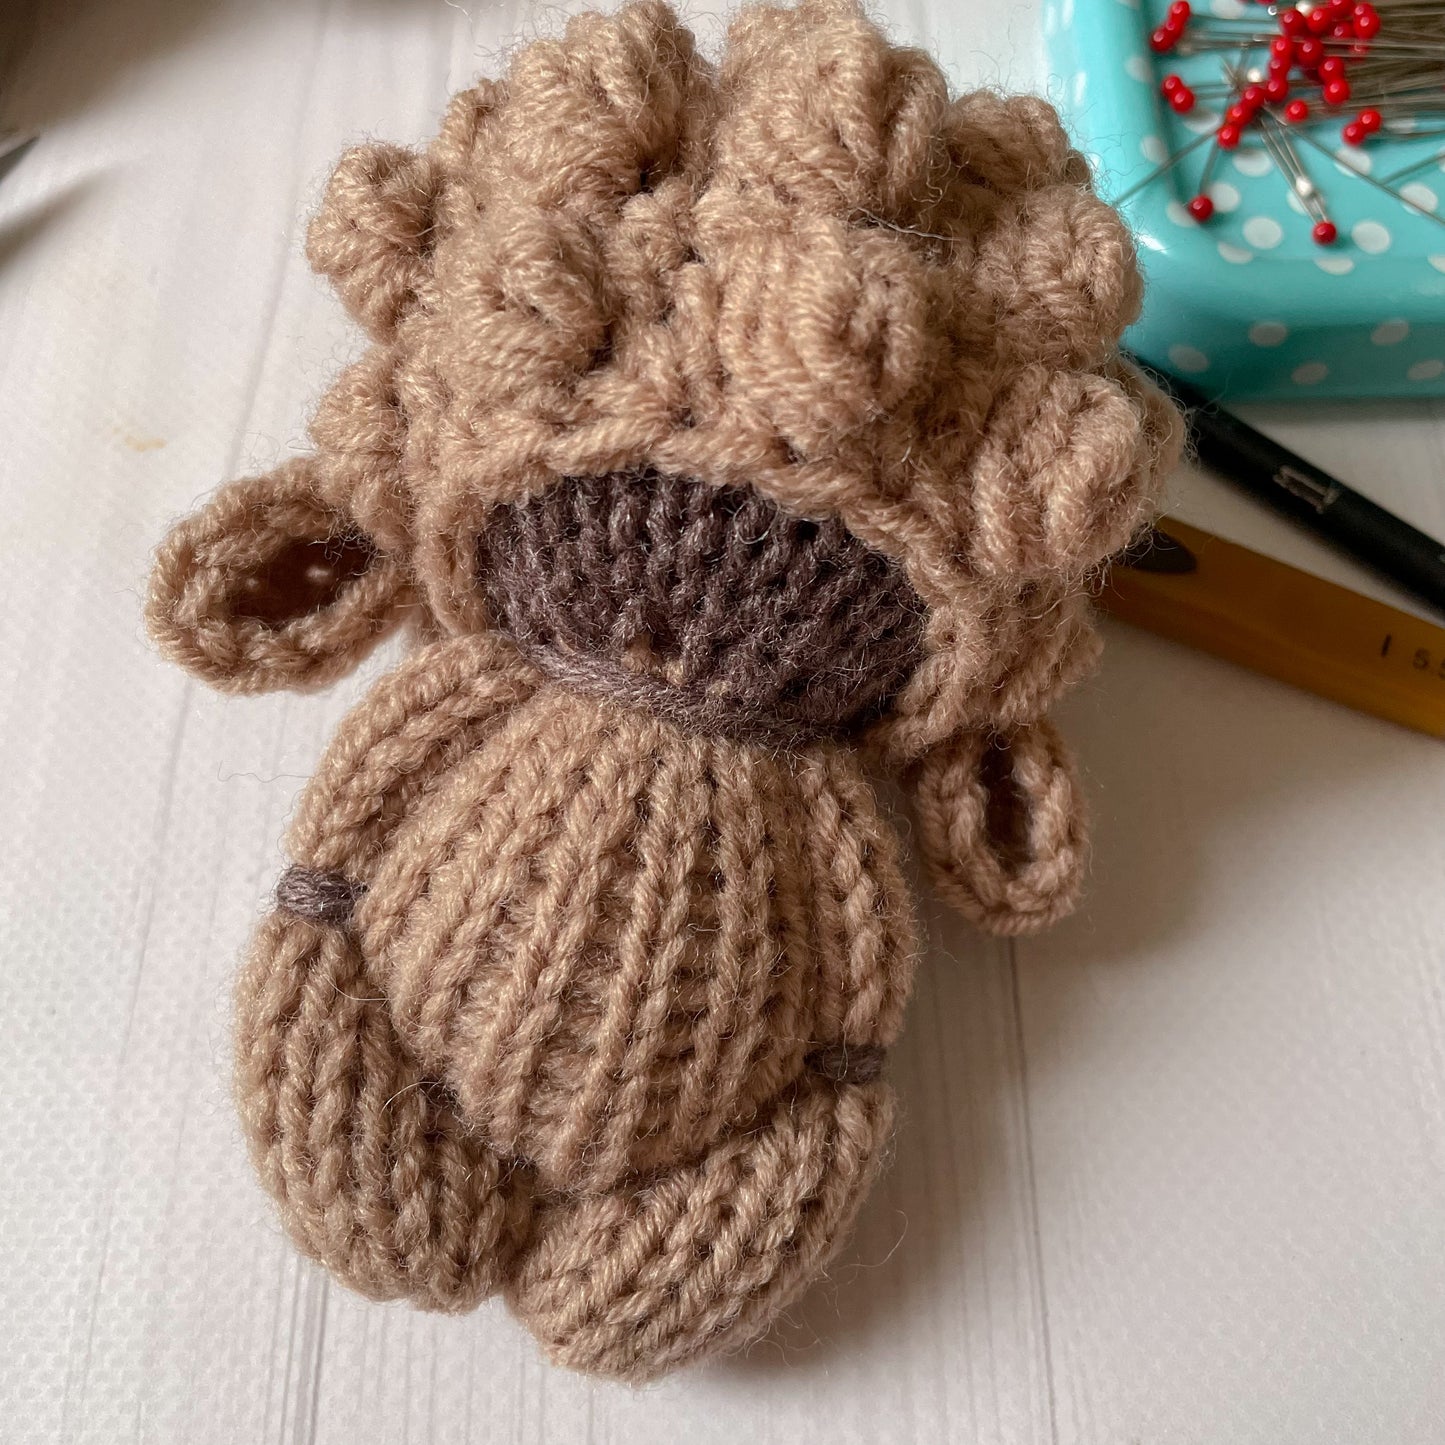 PDF Knit and Crochet Pattern little Sheep ENGLISH